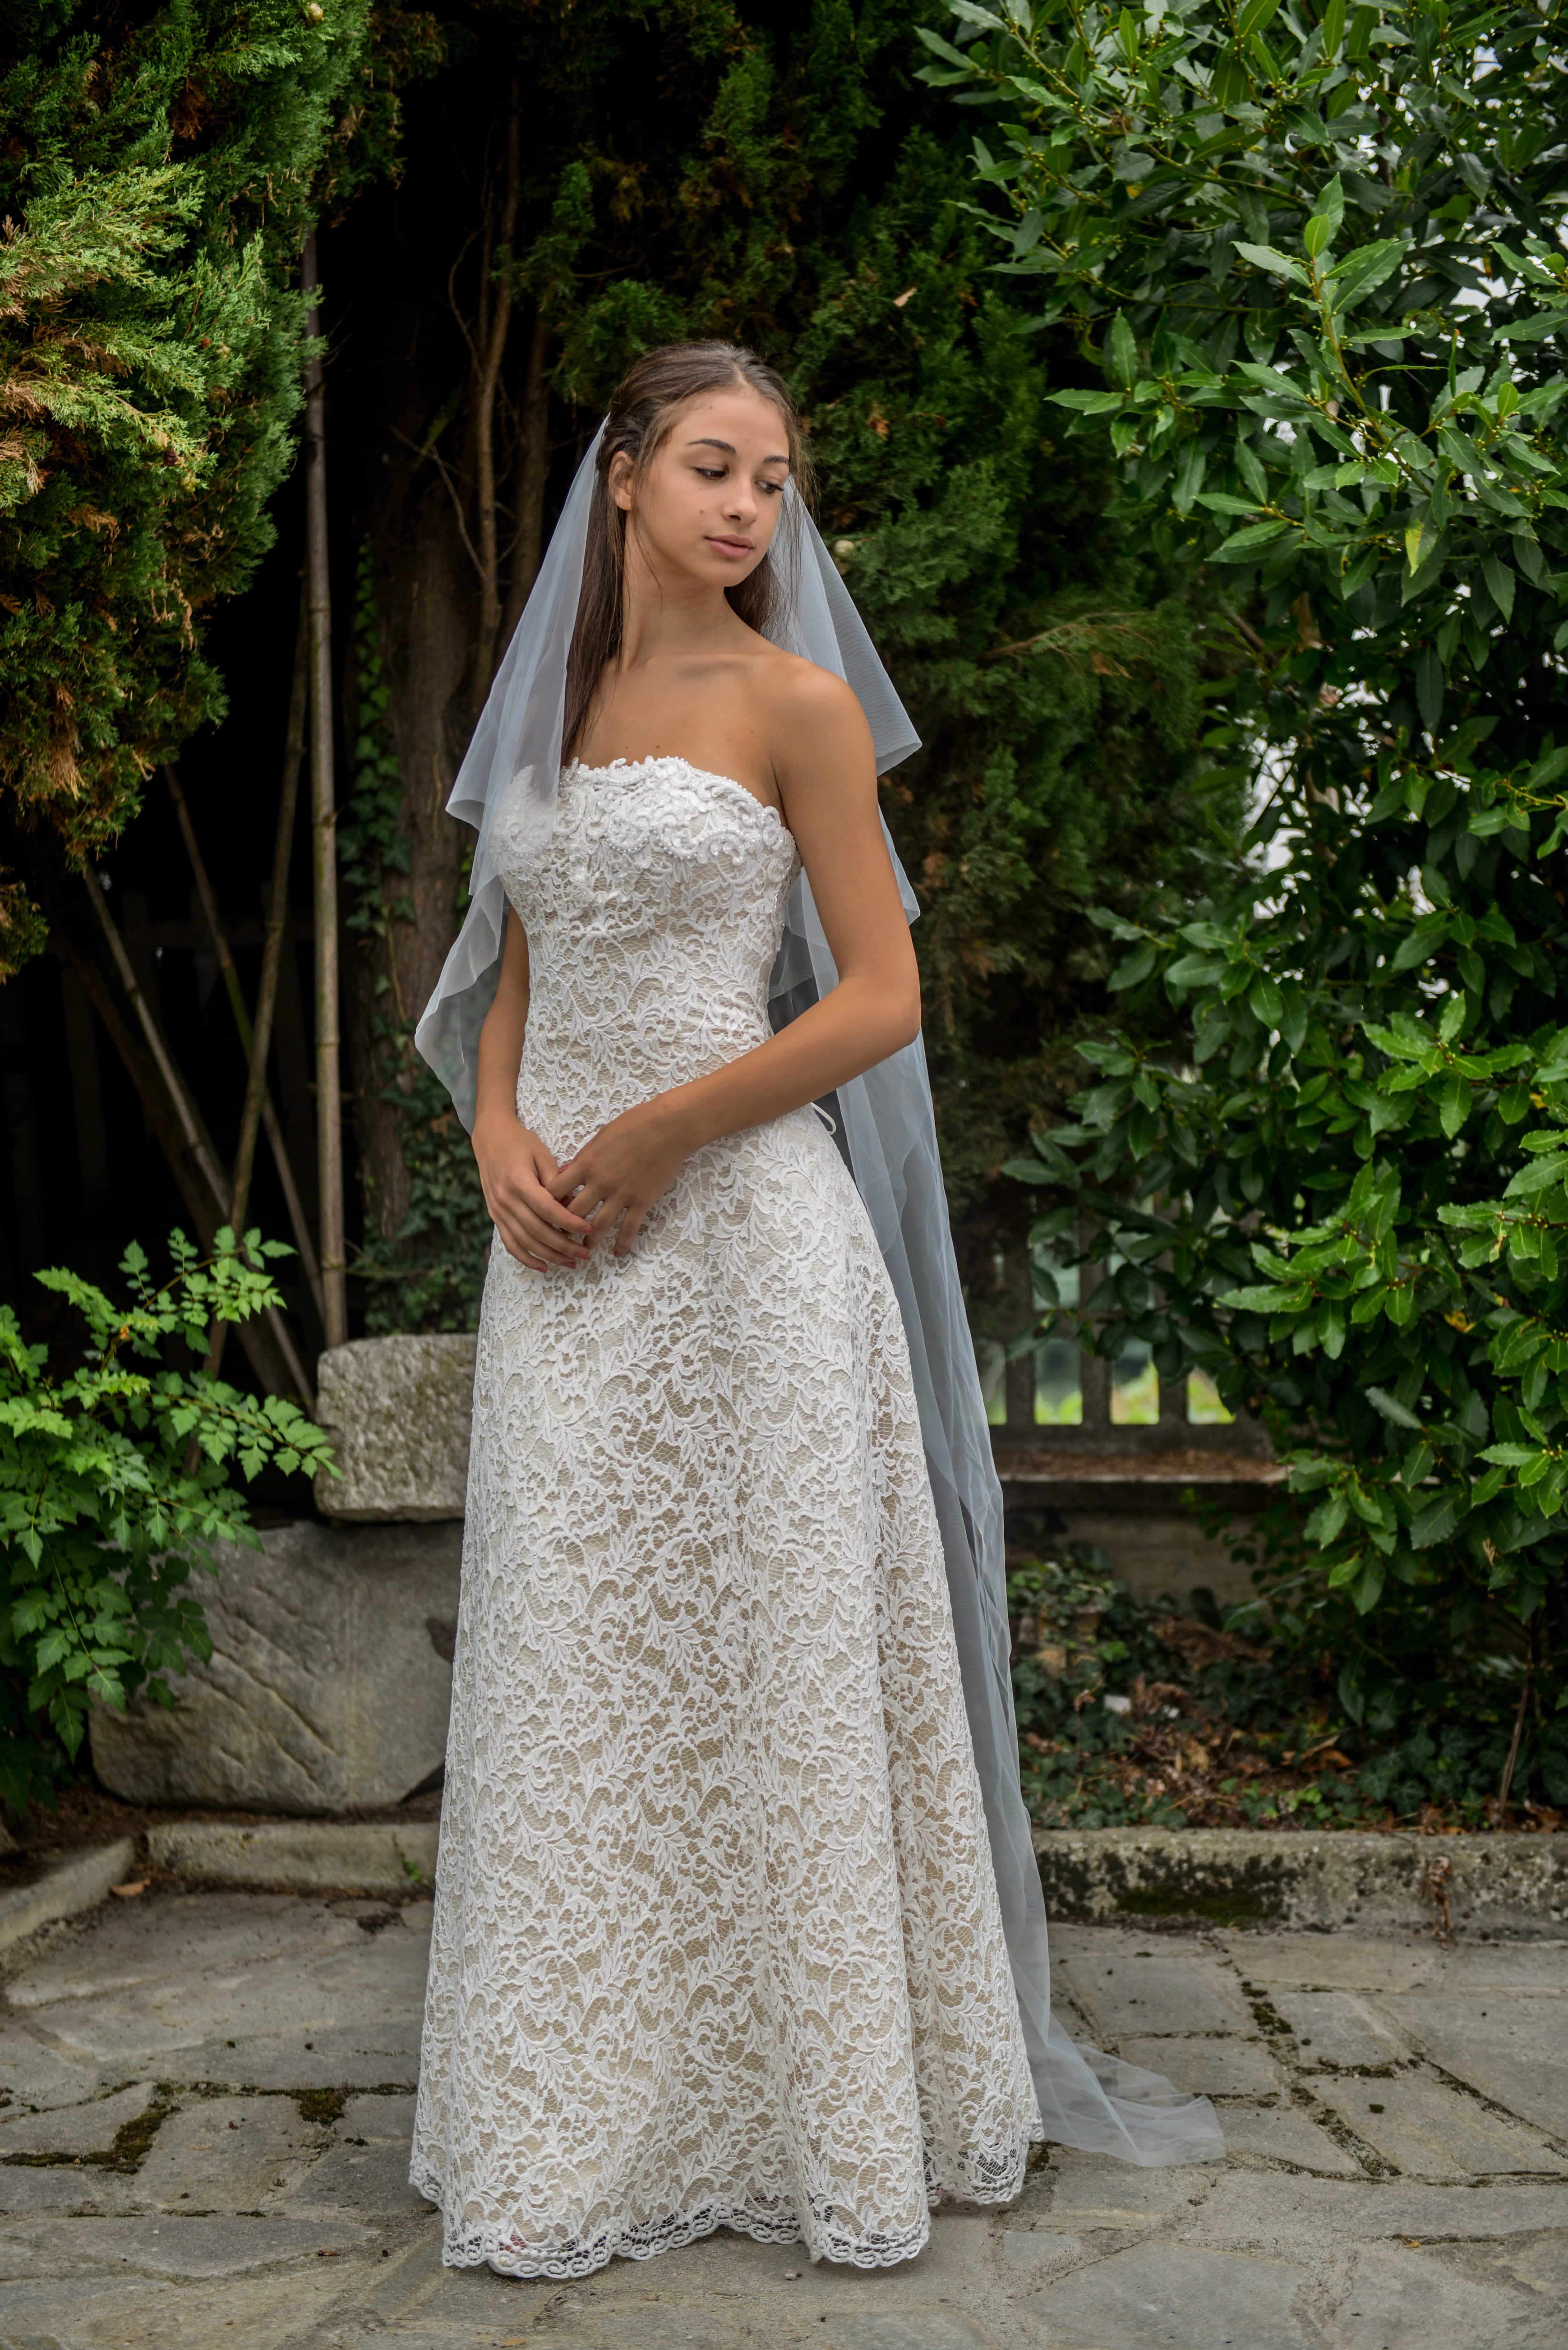 bellissimo abito da sposa in pizzo colore champagne e ricami sul corpetto -  VSV - abiti su misura Torino